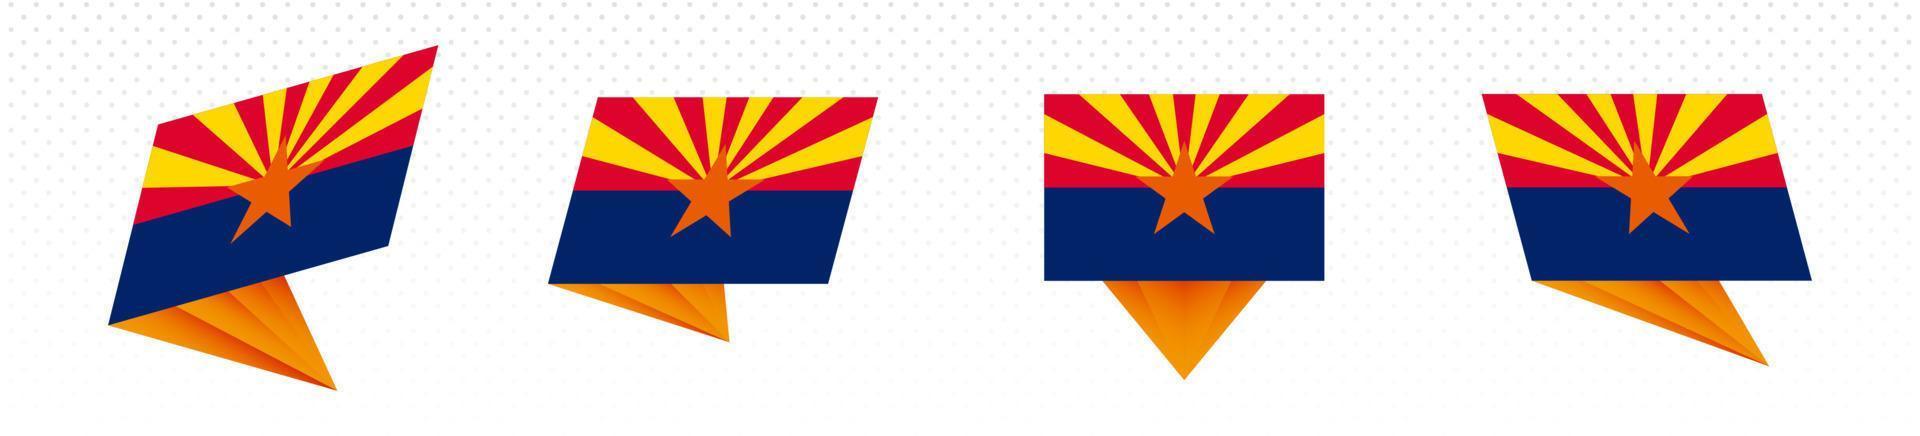 bandeira do estado do arizona em design abstrato moderno, conjunto de bandeiras. vetor